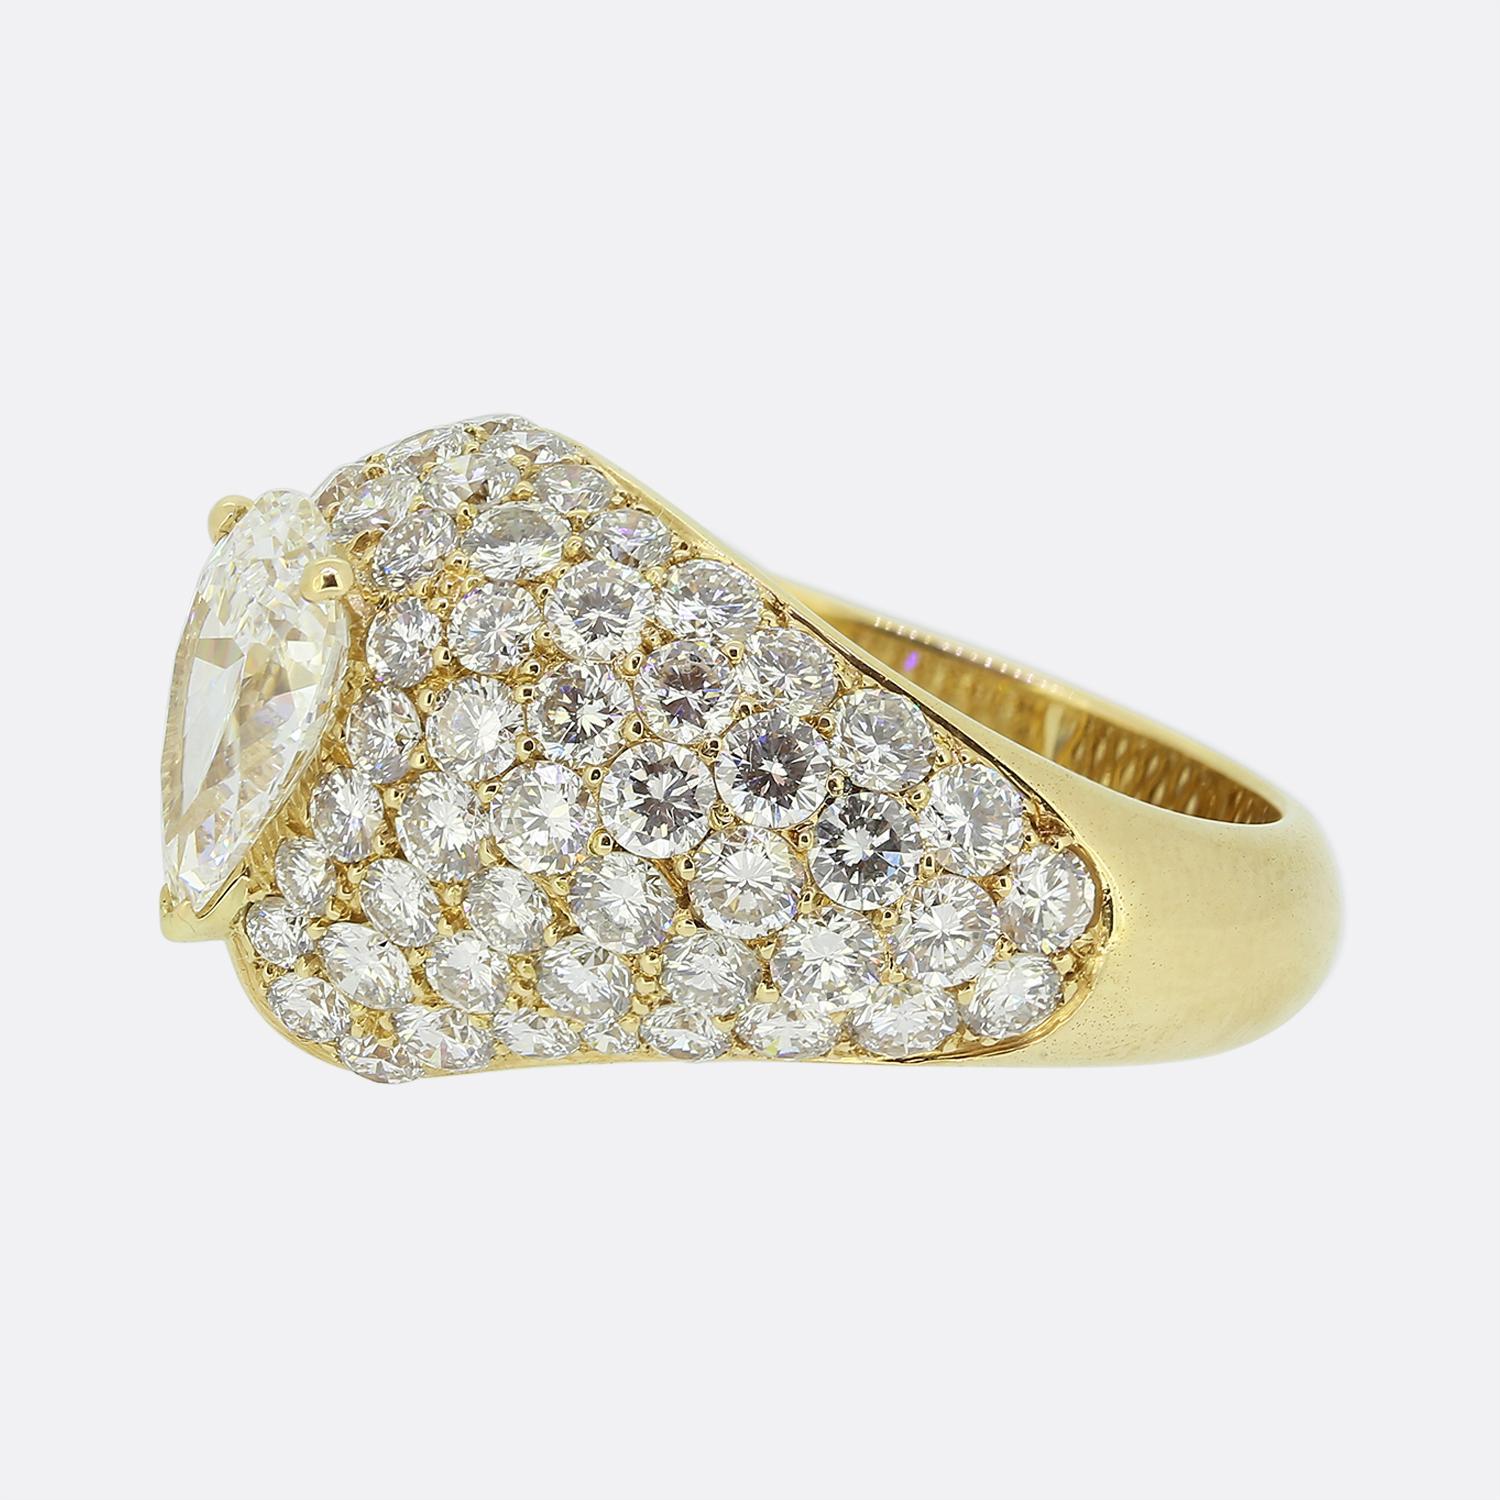 Nous avons ici une magnifique bague habillée en diamant de la maison de joaillerie de luxe mondialement connue Cartier. Cette pièce a été réalisée en or jaune 18 ct et présente un remarquable diamant poire de 1,44 ct au centre de la face dans une